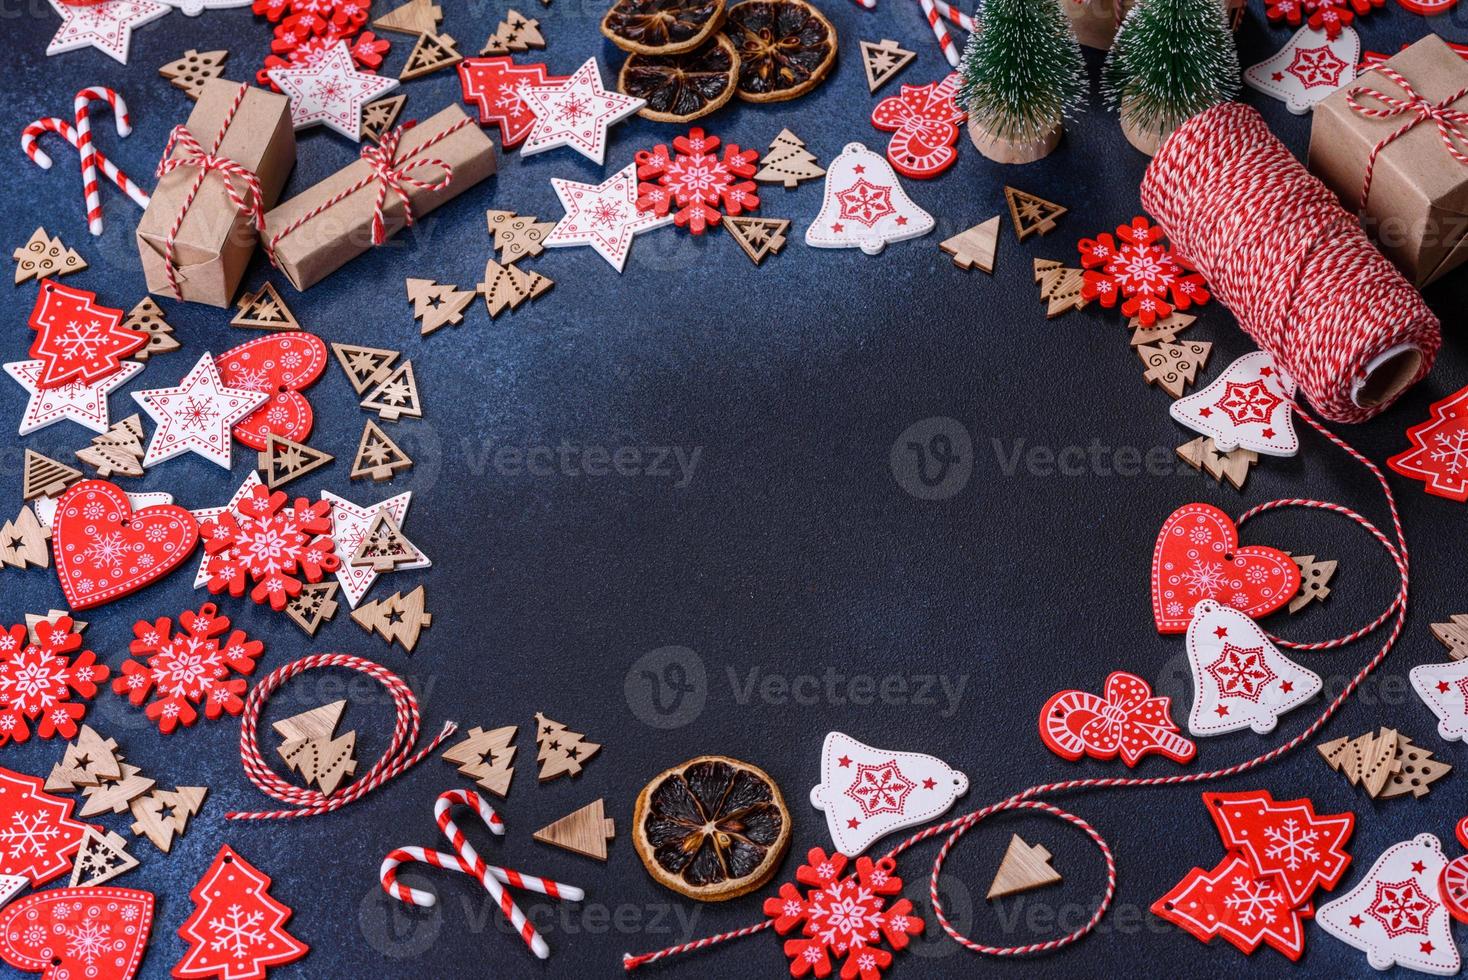 jul hemlagad pepparkaka småkakor på mörk betong tabell foto